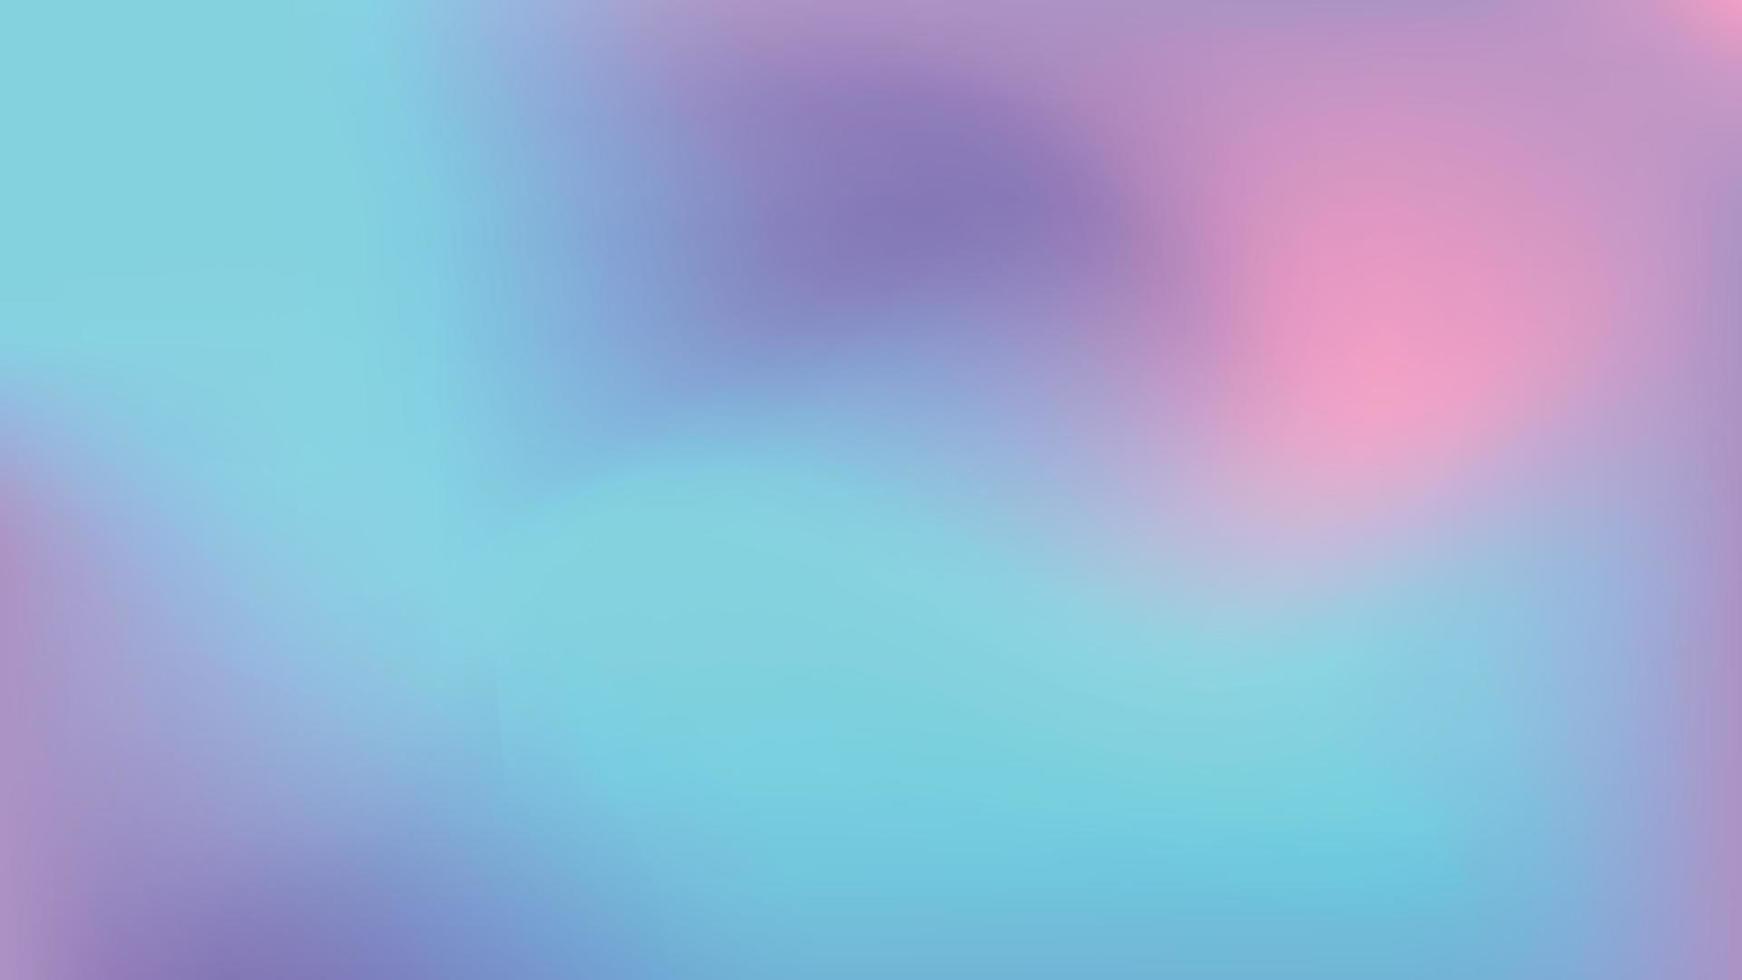 abstrakter Hintergrund mit Farbverlauf. glatte weiche und warme helle pastellflüssigkeit lila, pink, cian-verlauf für app, webdesign, webseiten, banner, grußkarten. Vektor-Illustration-Design vektor